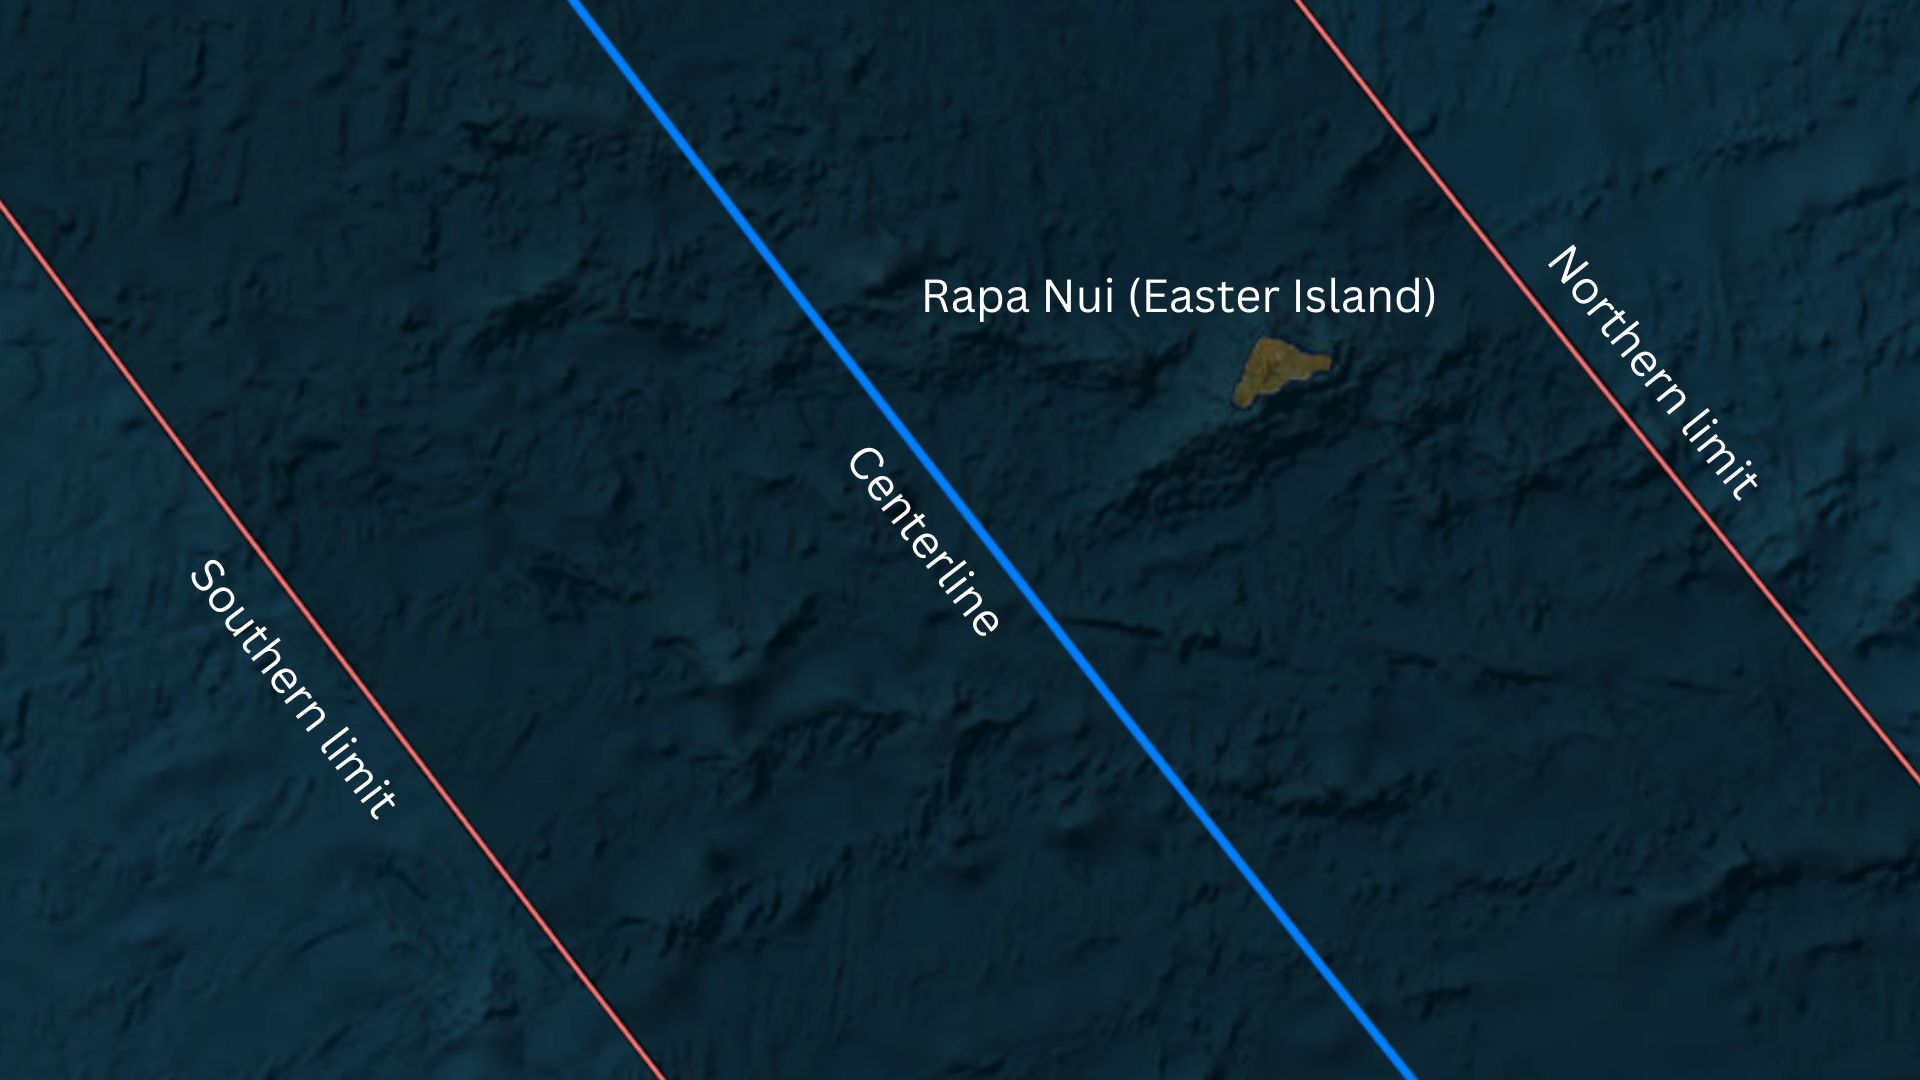 Mapa que muestra toda la isla de Rapa Nui (Isla de Pascua) dentro de la trayectoria anular del eclipse solar.